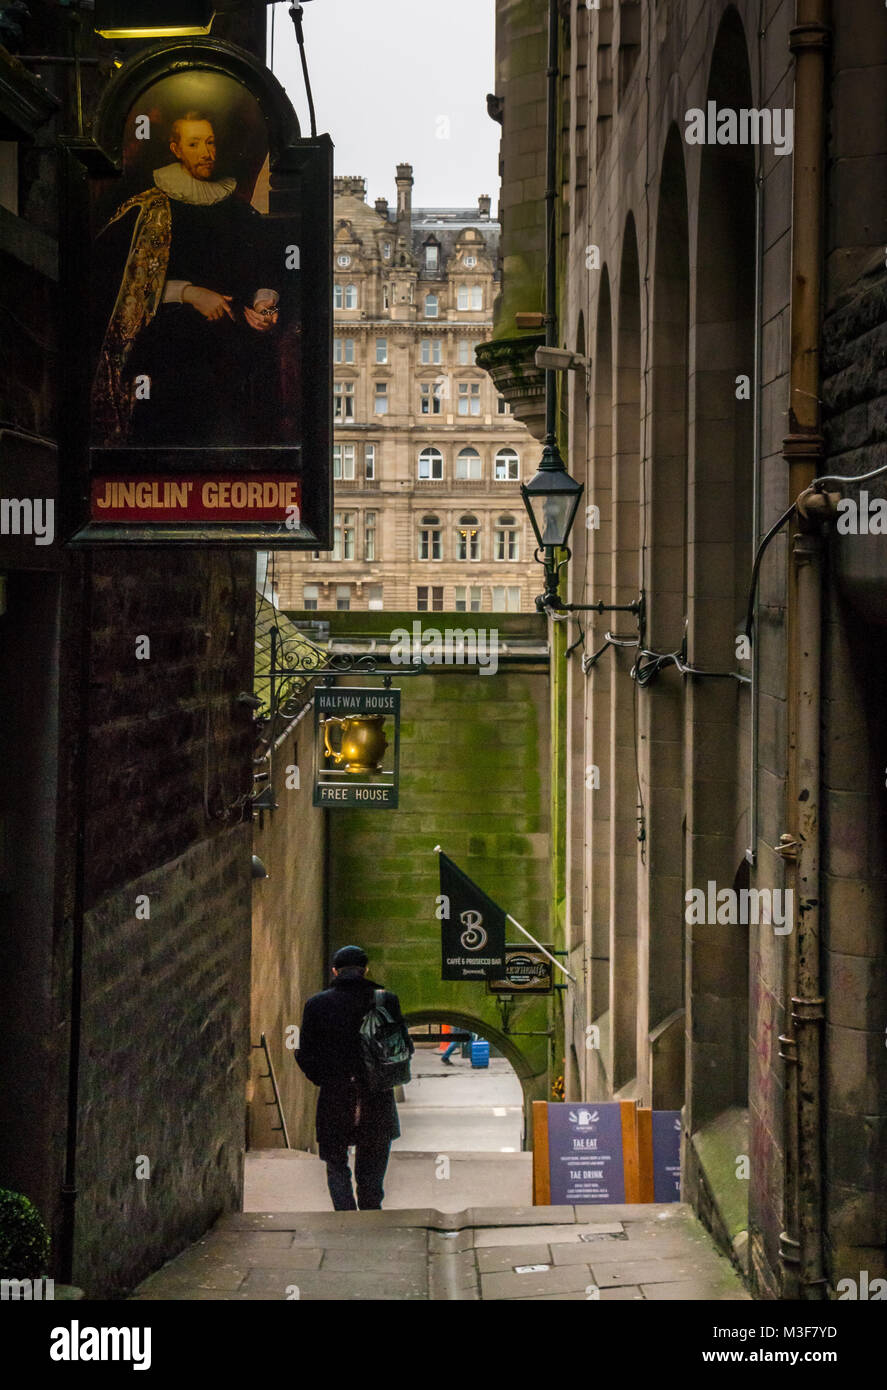 Hombre caminando en el estrecho callejón con Jinglin Fleshmarket Geordie y Halfway House pub signos, Edimburgo, Escocia, Reino Unido, con el Balmoral Hotel en distancia Foto de stock